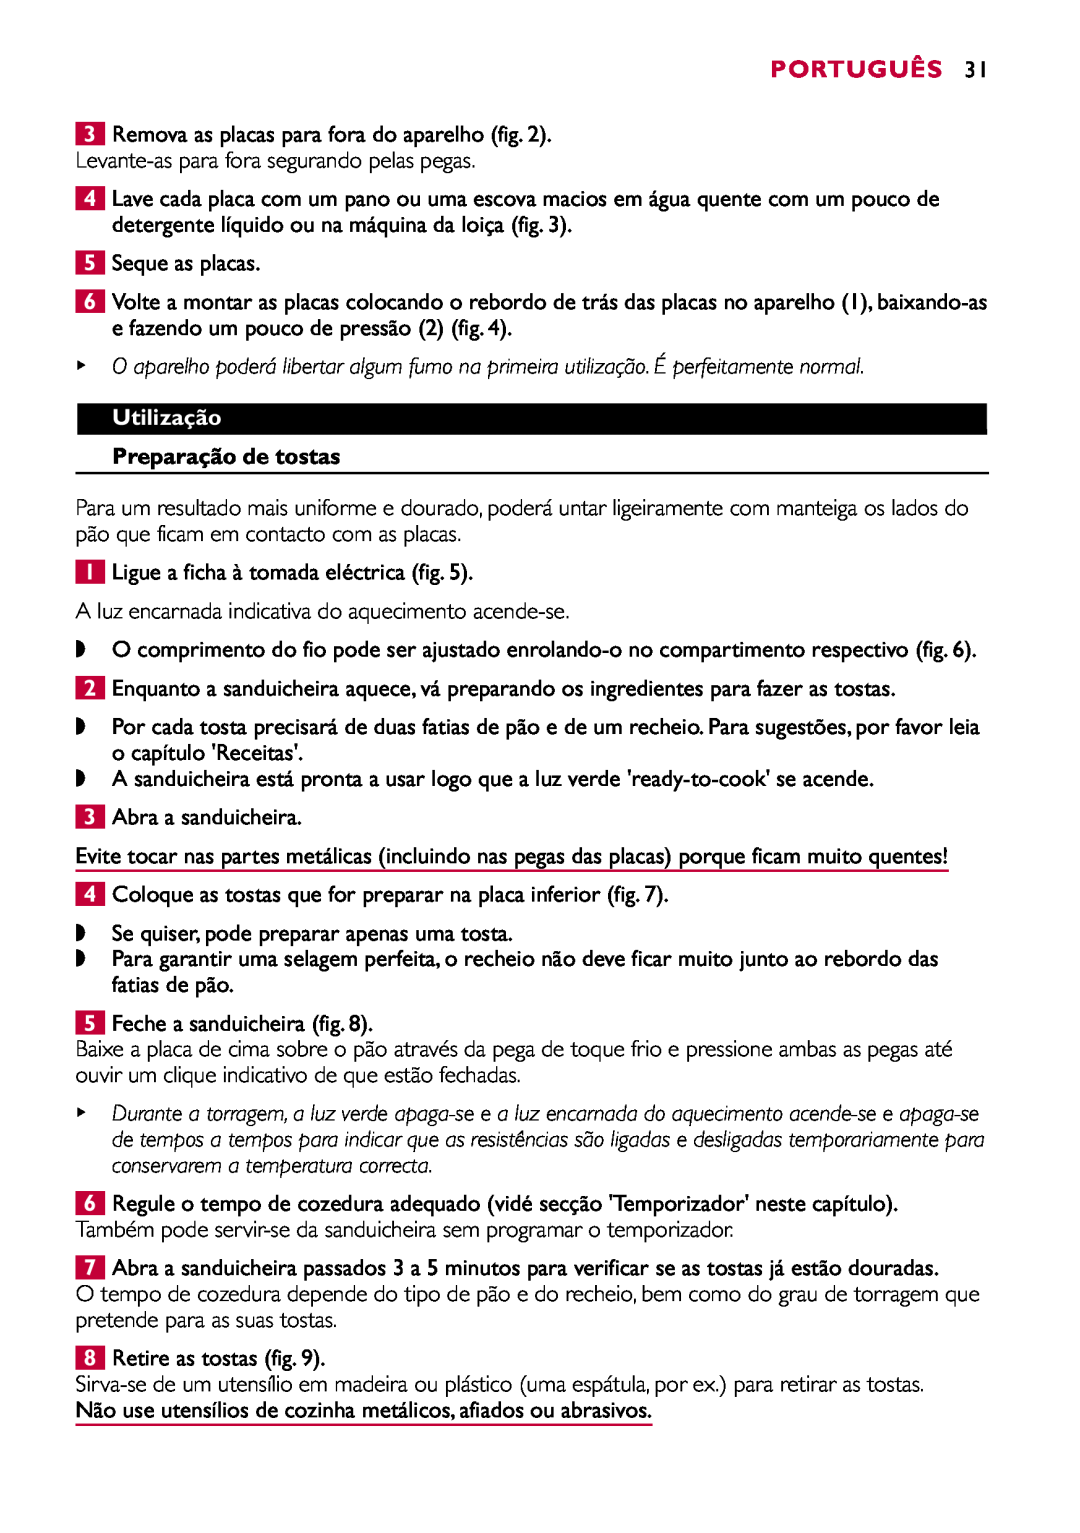 Philips HD2415 manual Português, Utilização, Preparação de tostas 